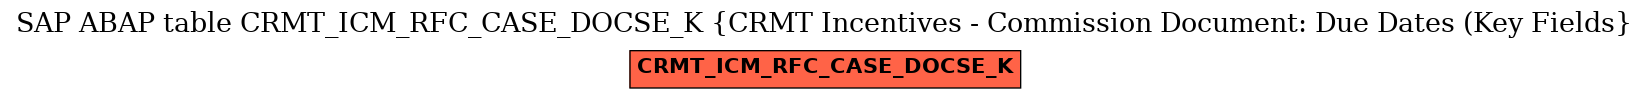 E-R Diagram for table CRMT_ICM_RFC_CASE_DOCSE_K (CRMT Incentives - Commission Document: Due Dates (Key Fields)